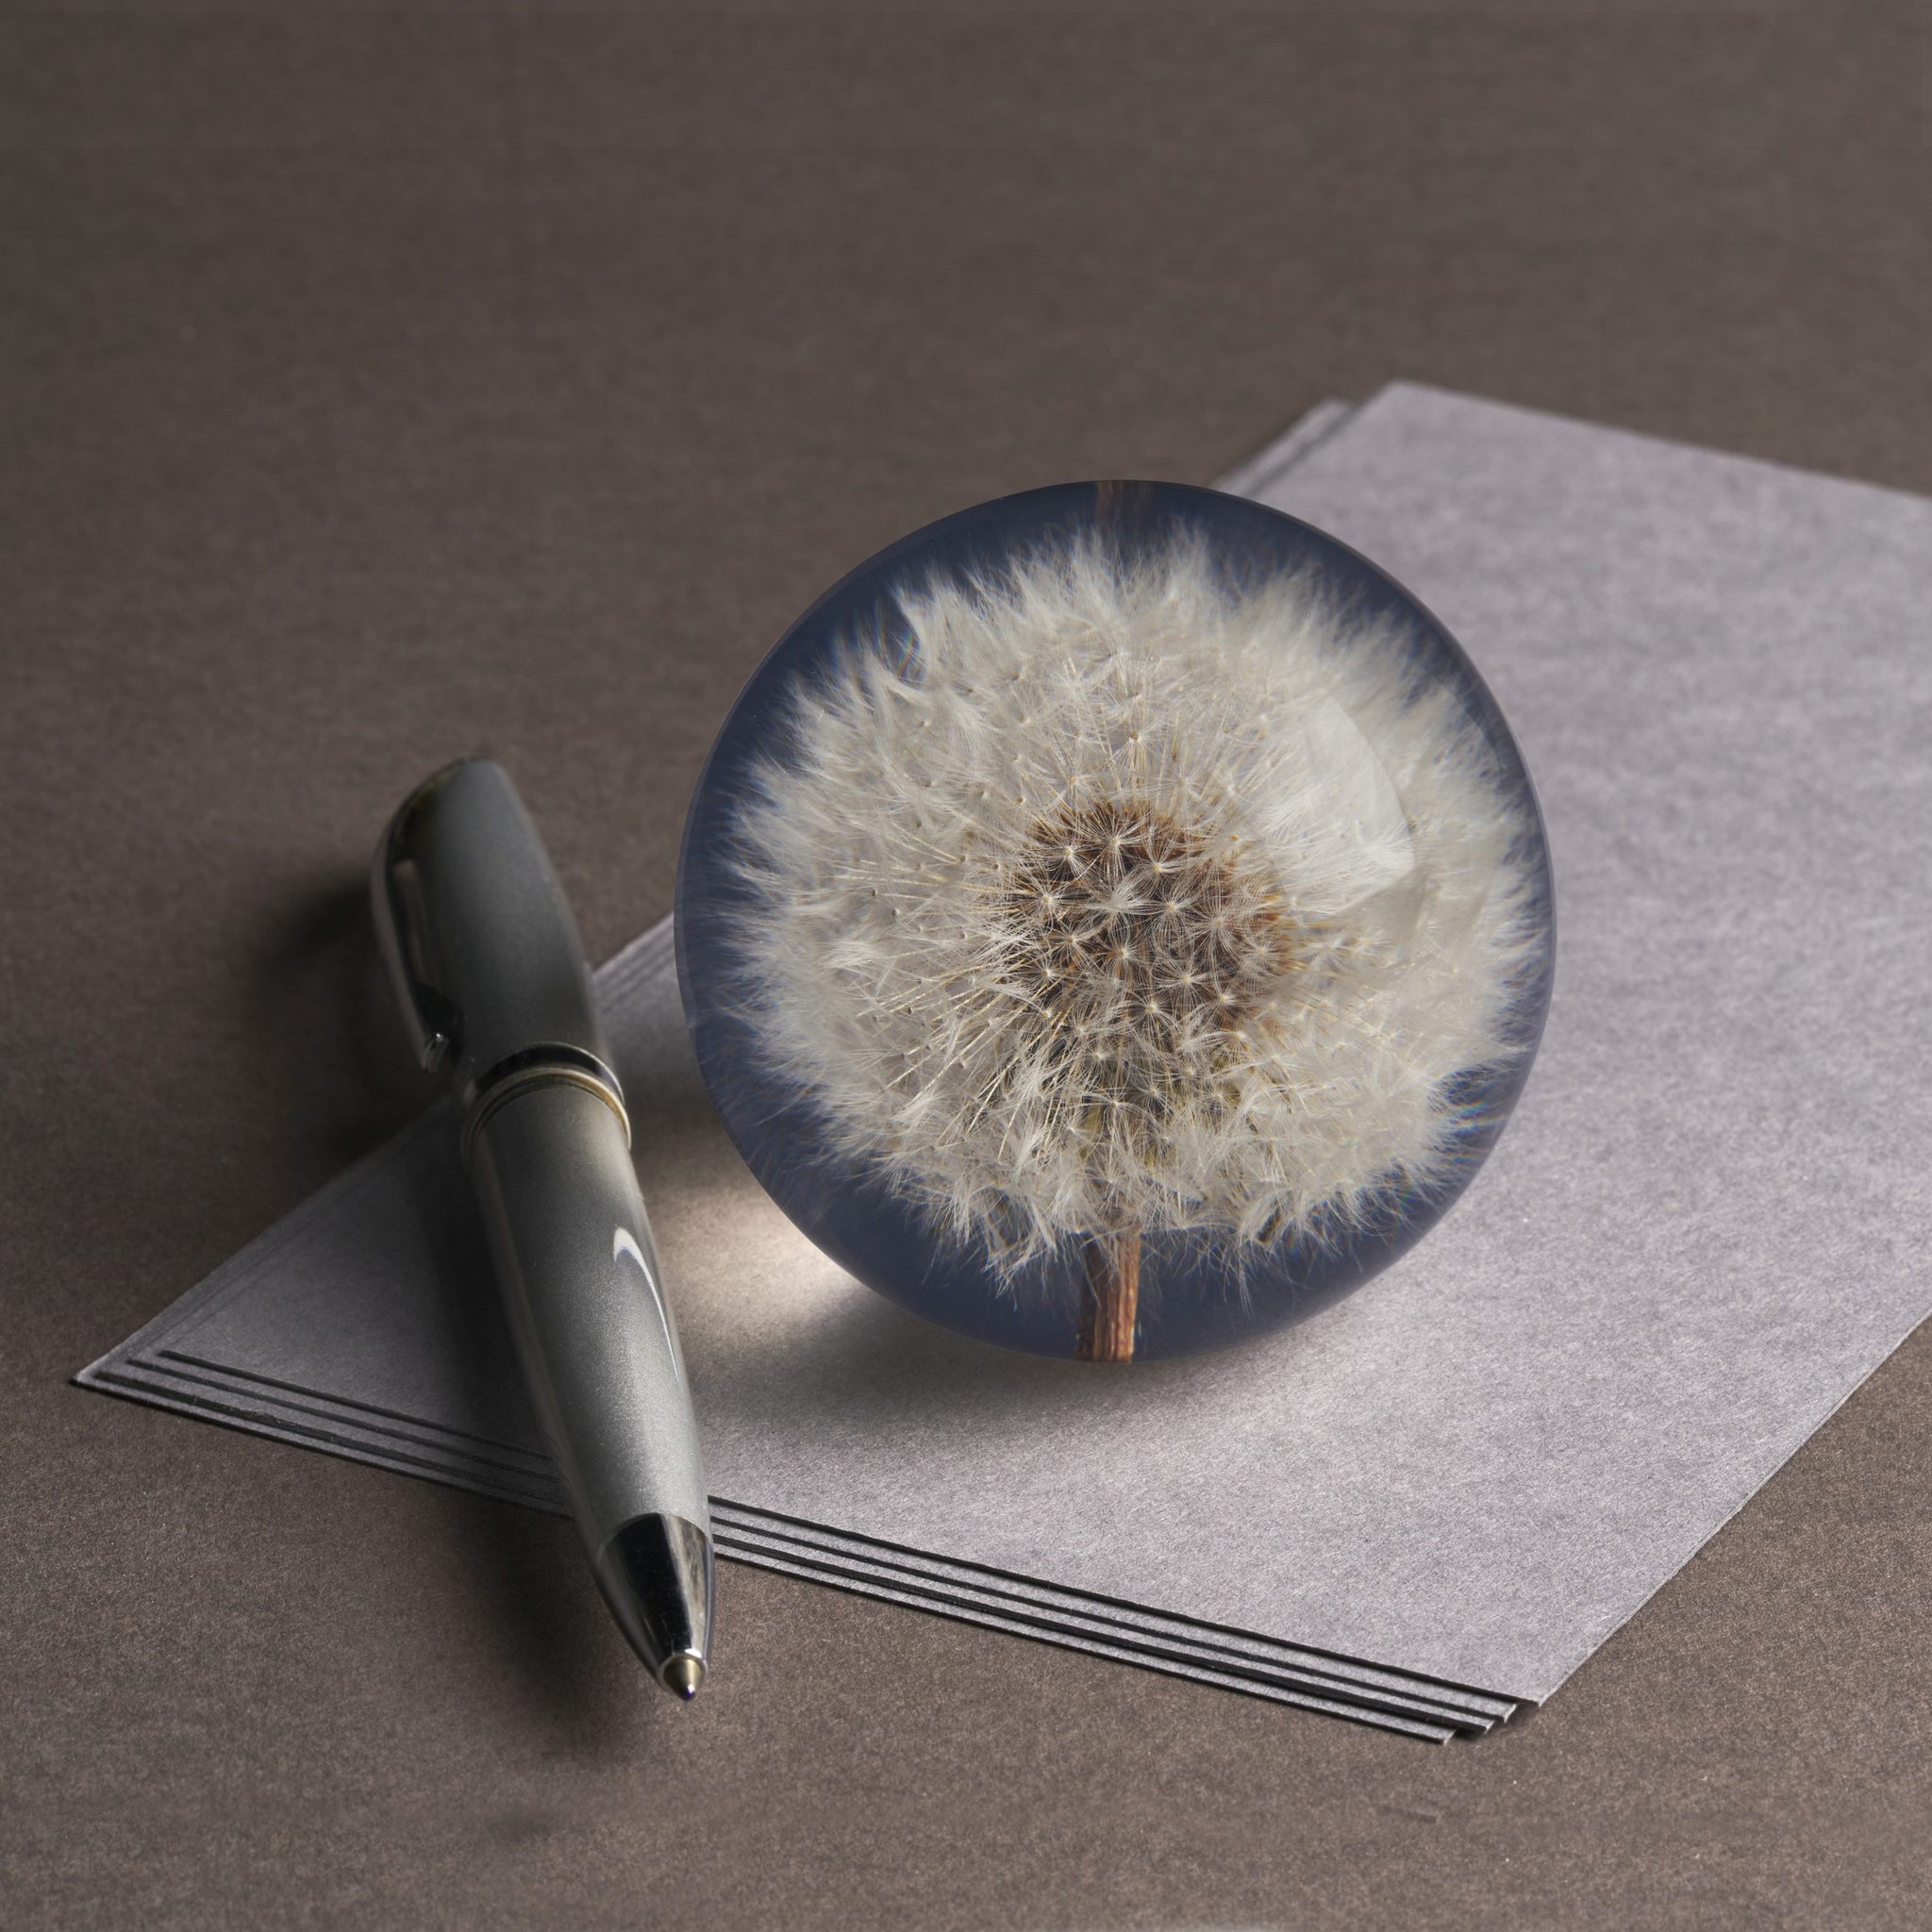 Dandelion Paperweight Small│Presse-papier Hafod Grange│Paardenbloem│op losse vellen papier met pen